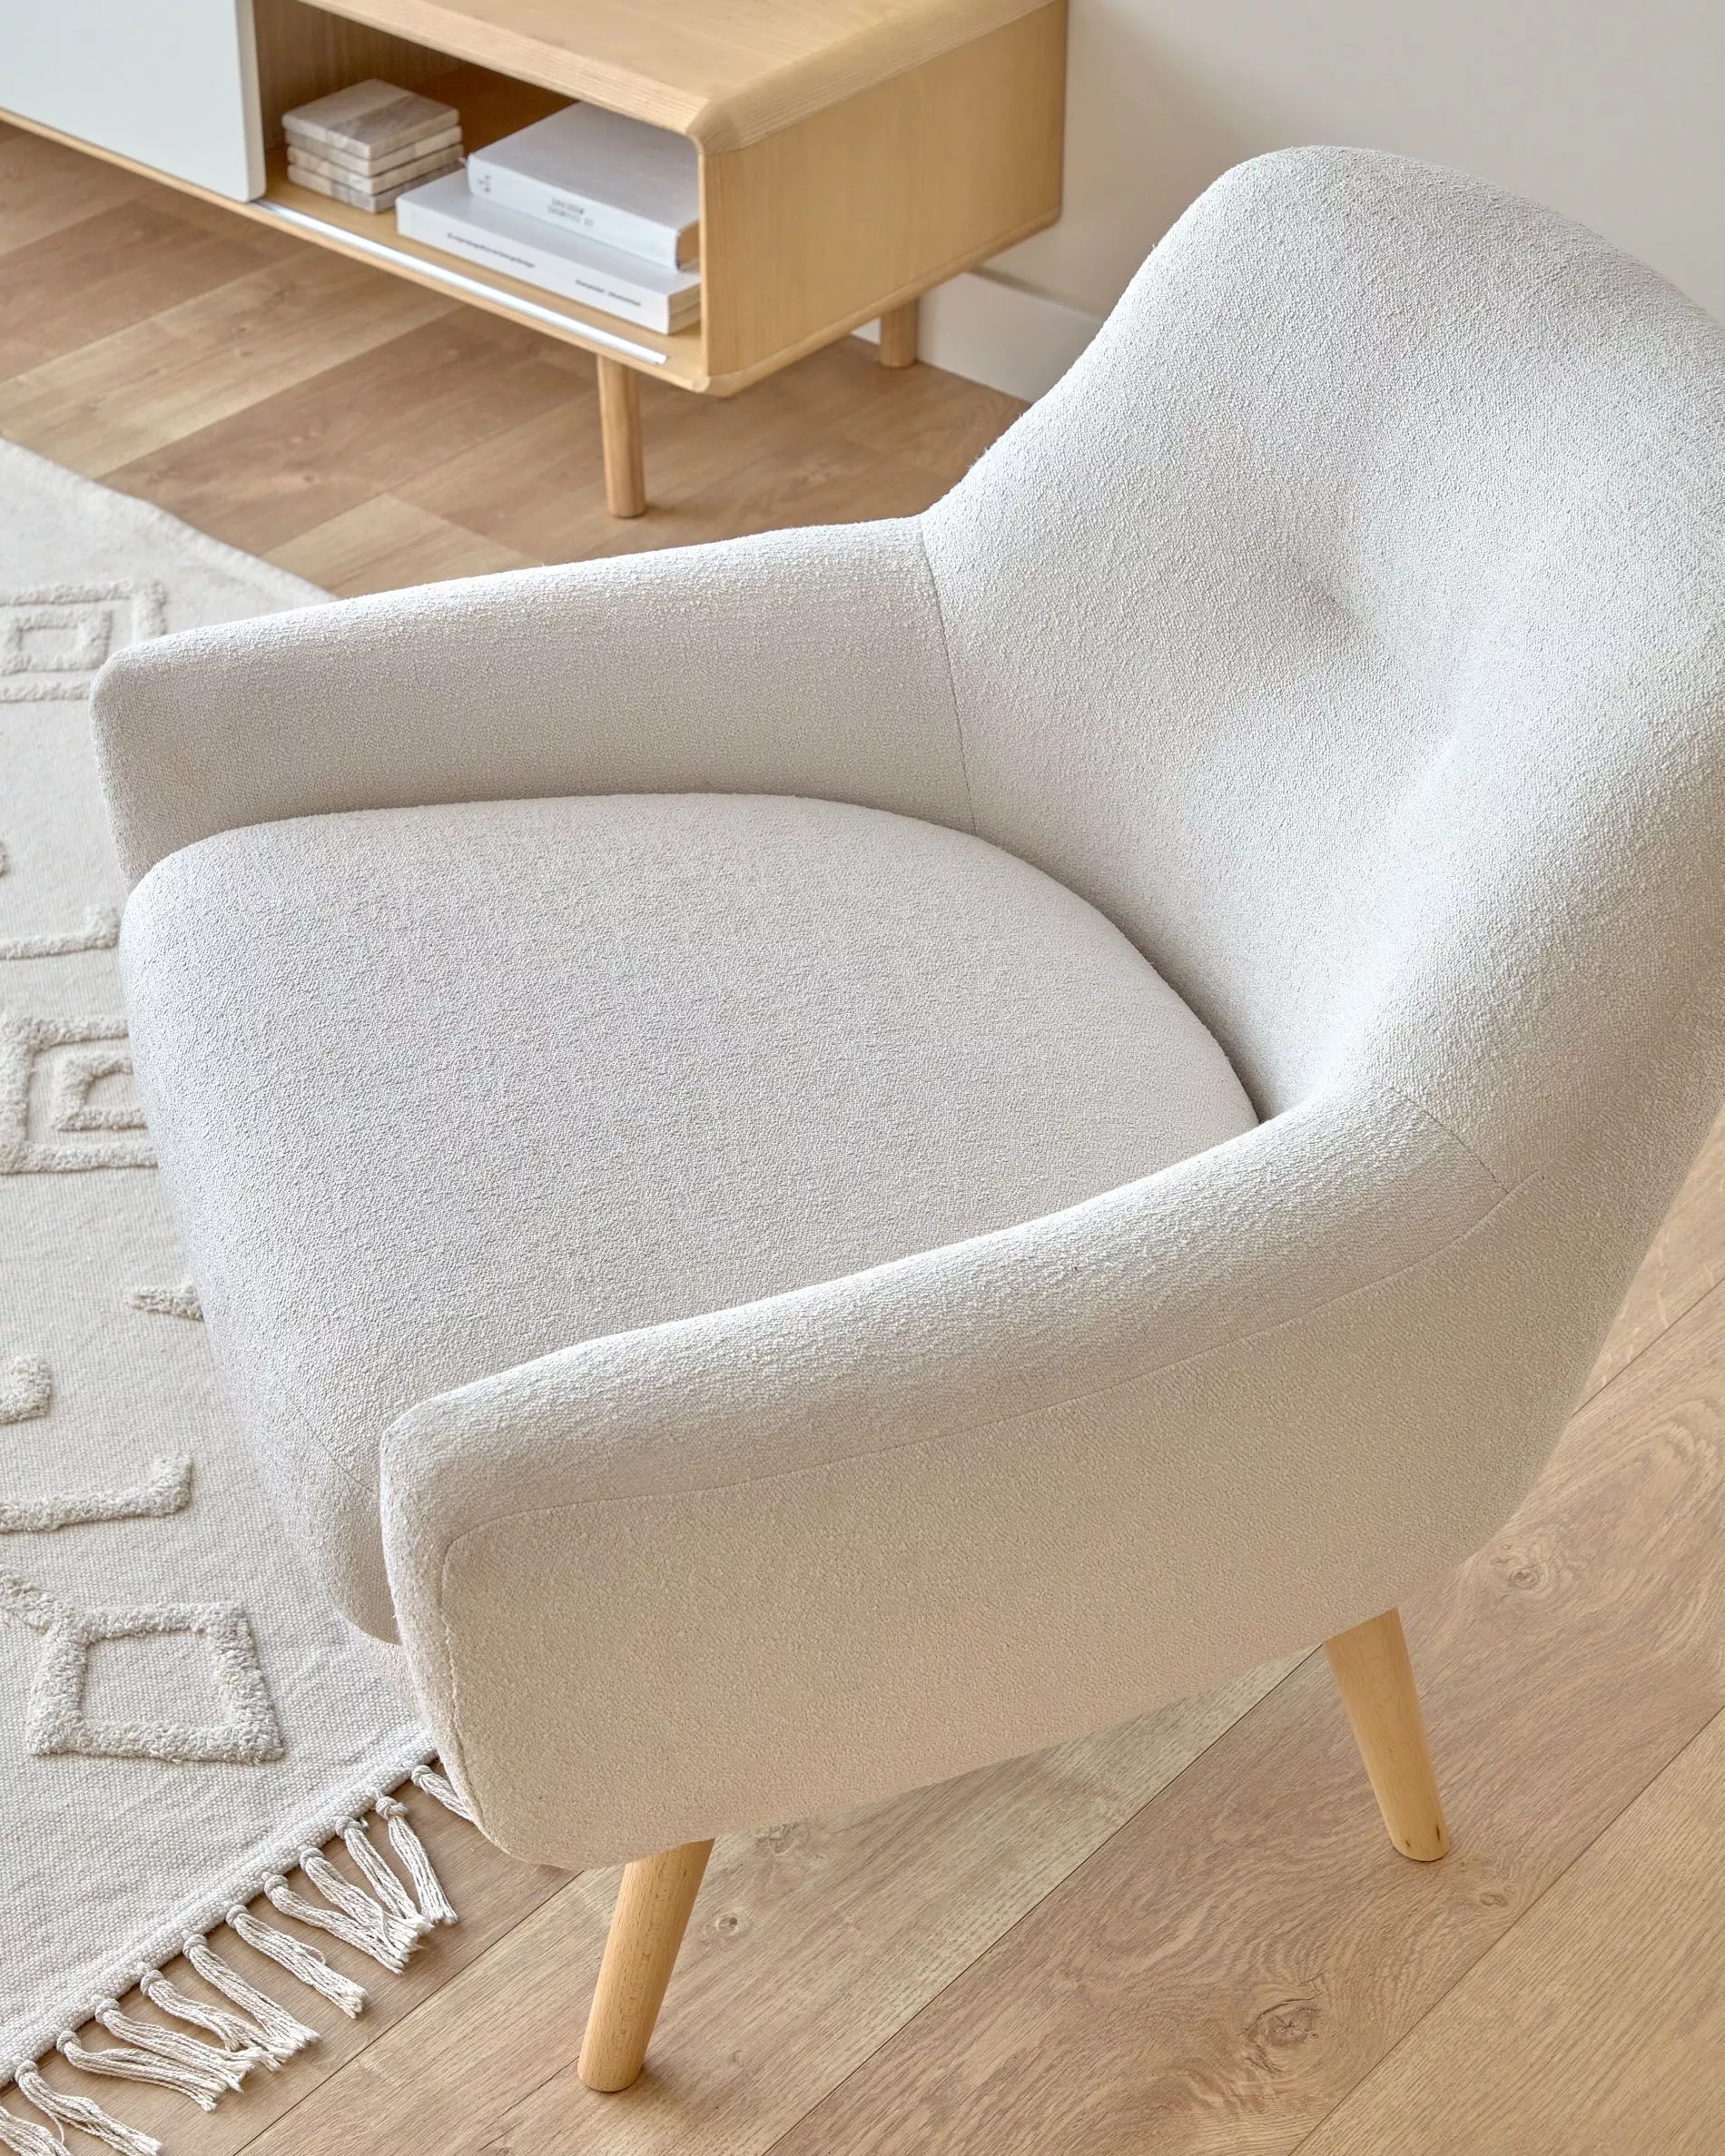 Кресло La Forma Candela из белой ткани букле